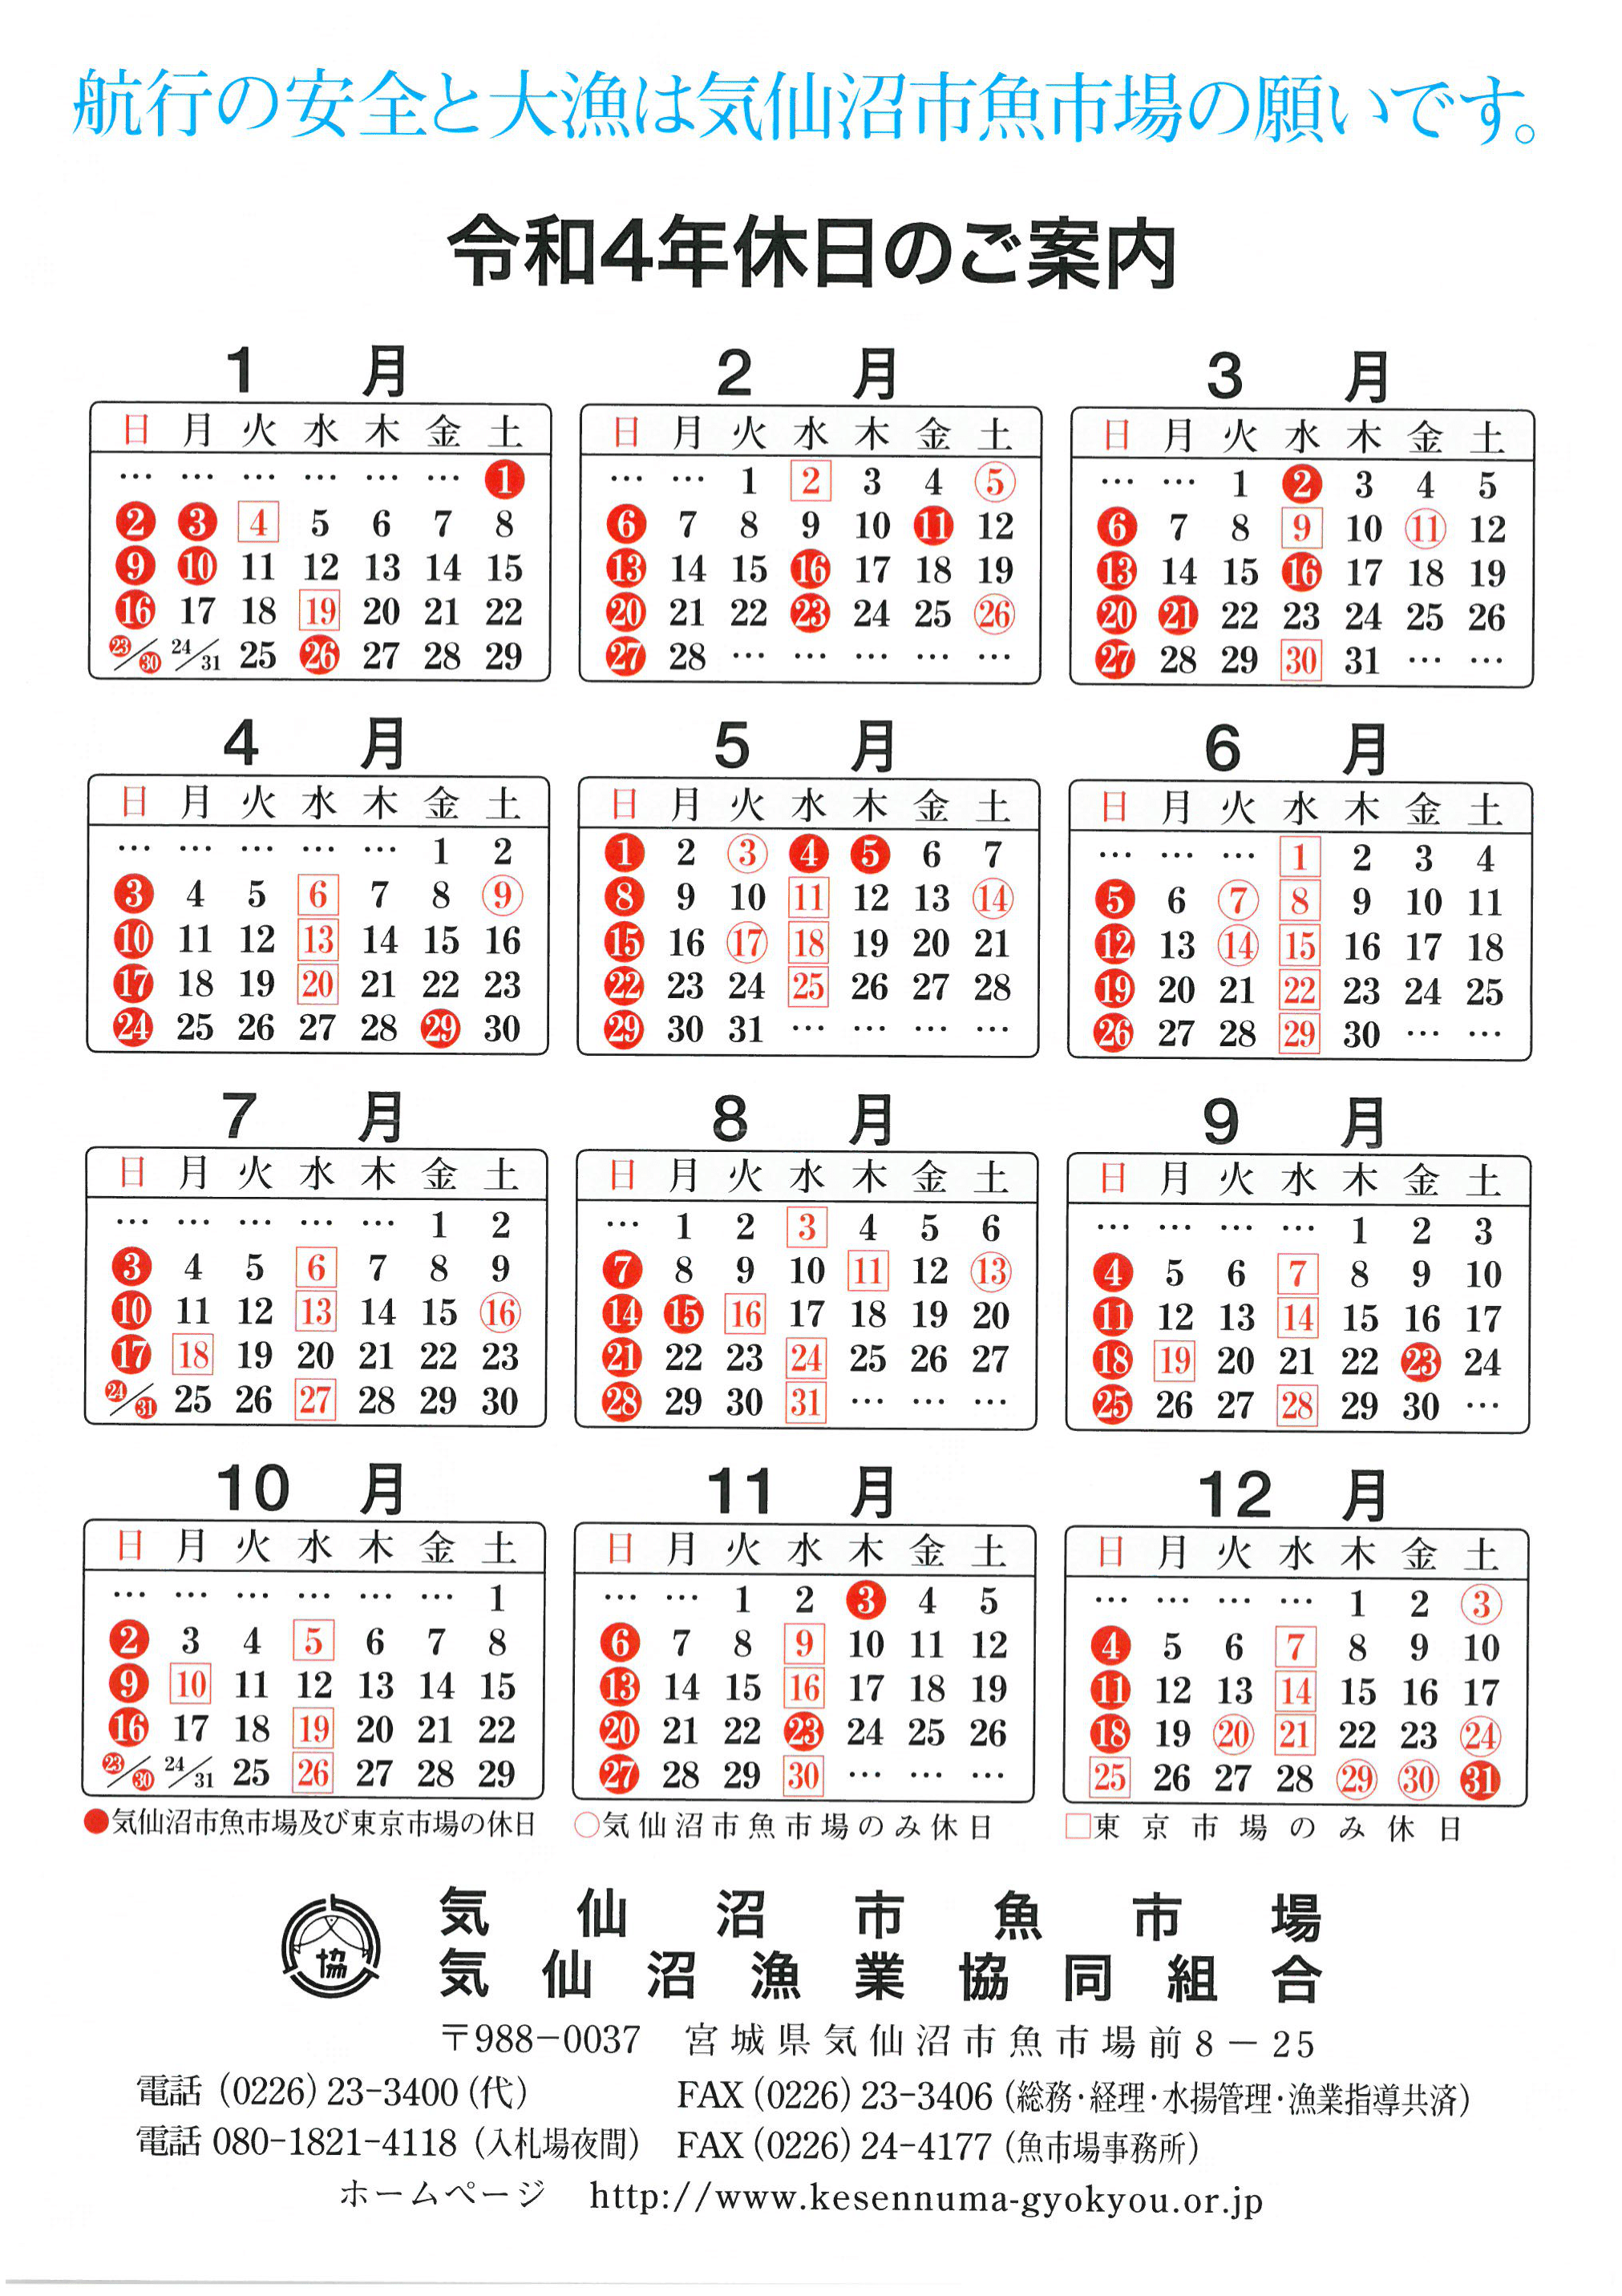 気仙沼魚市場 カレンダー